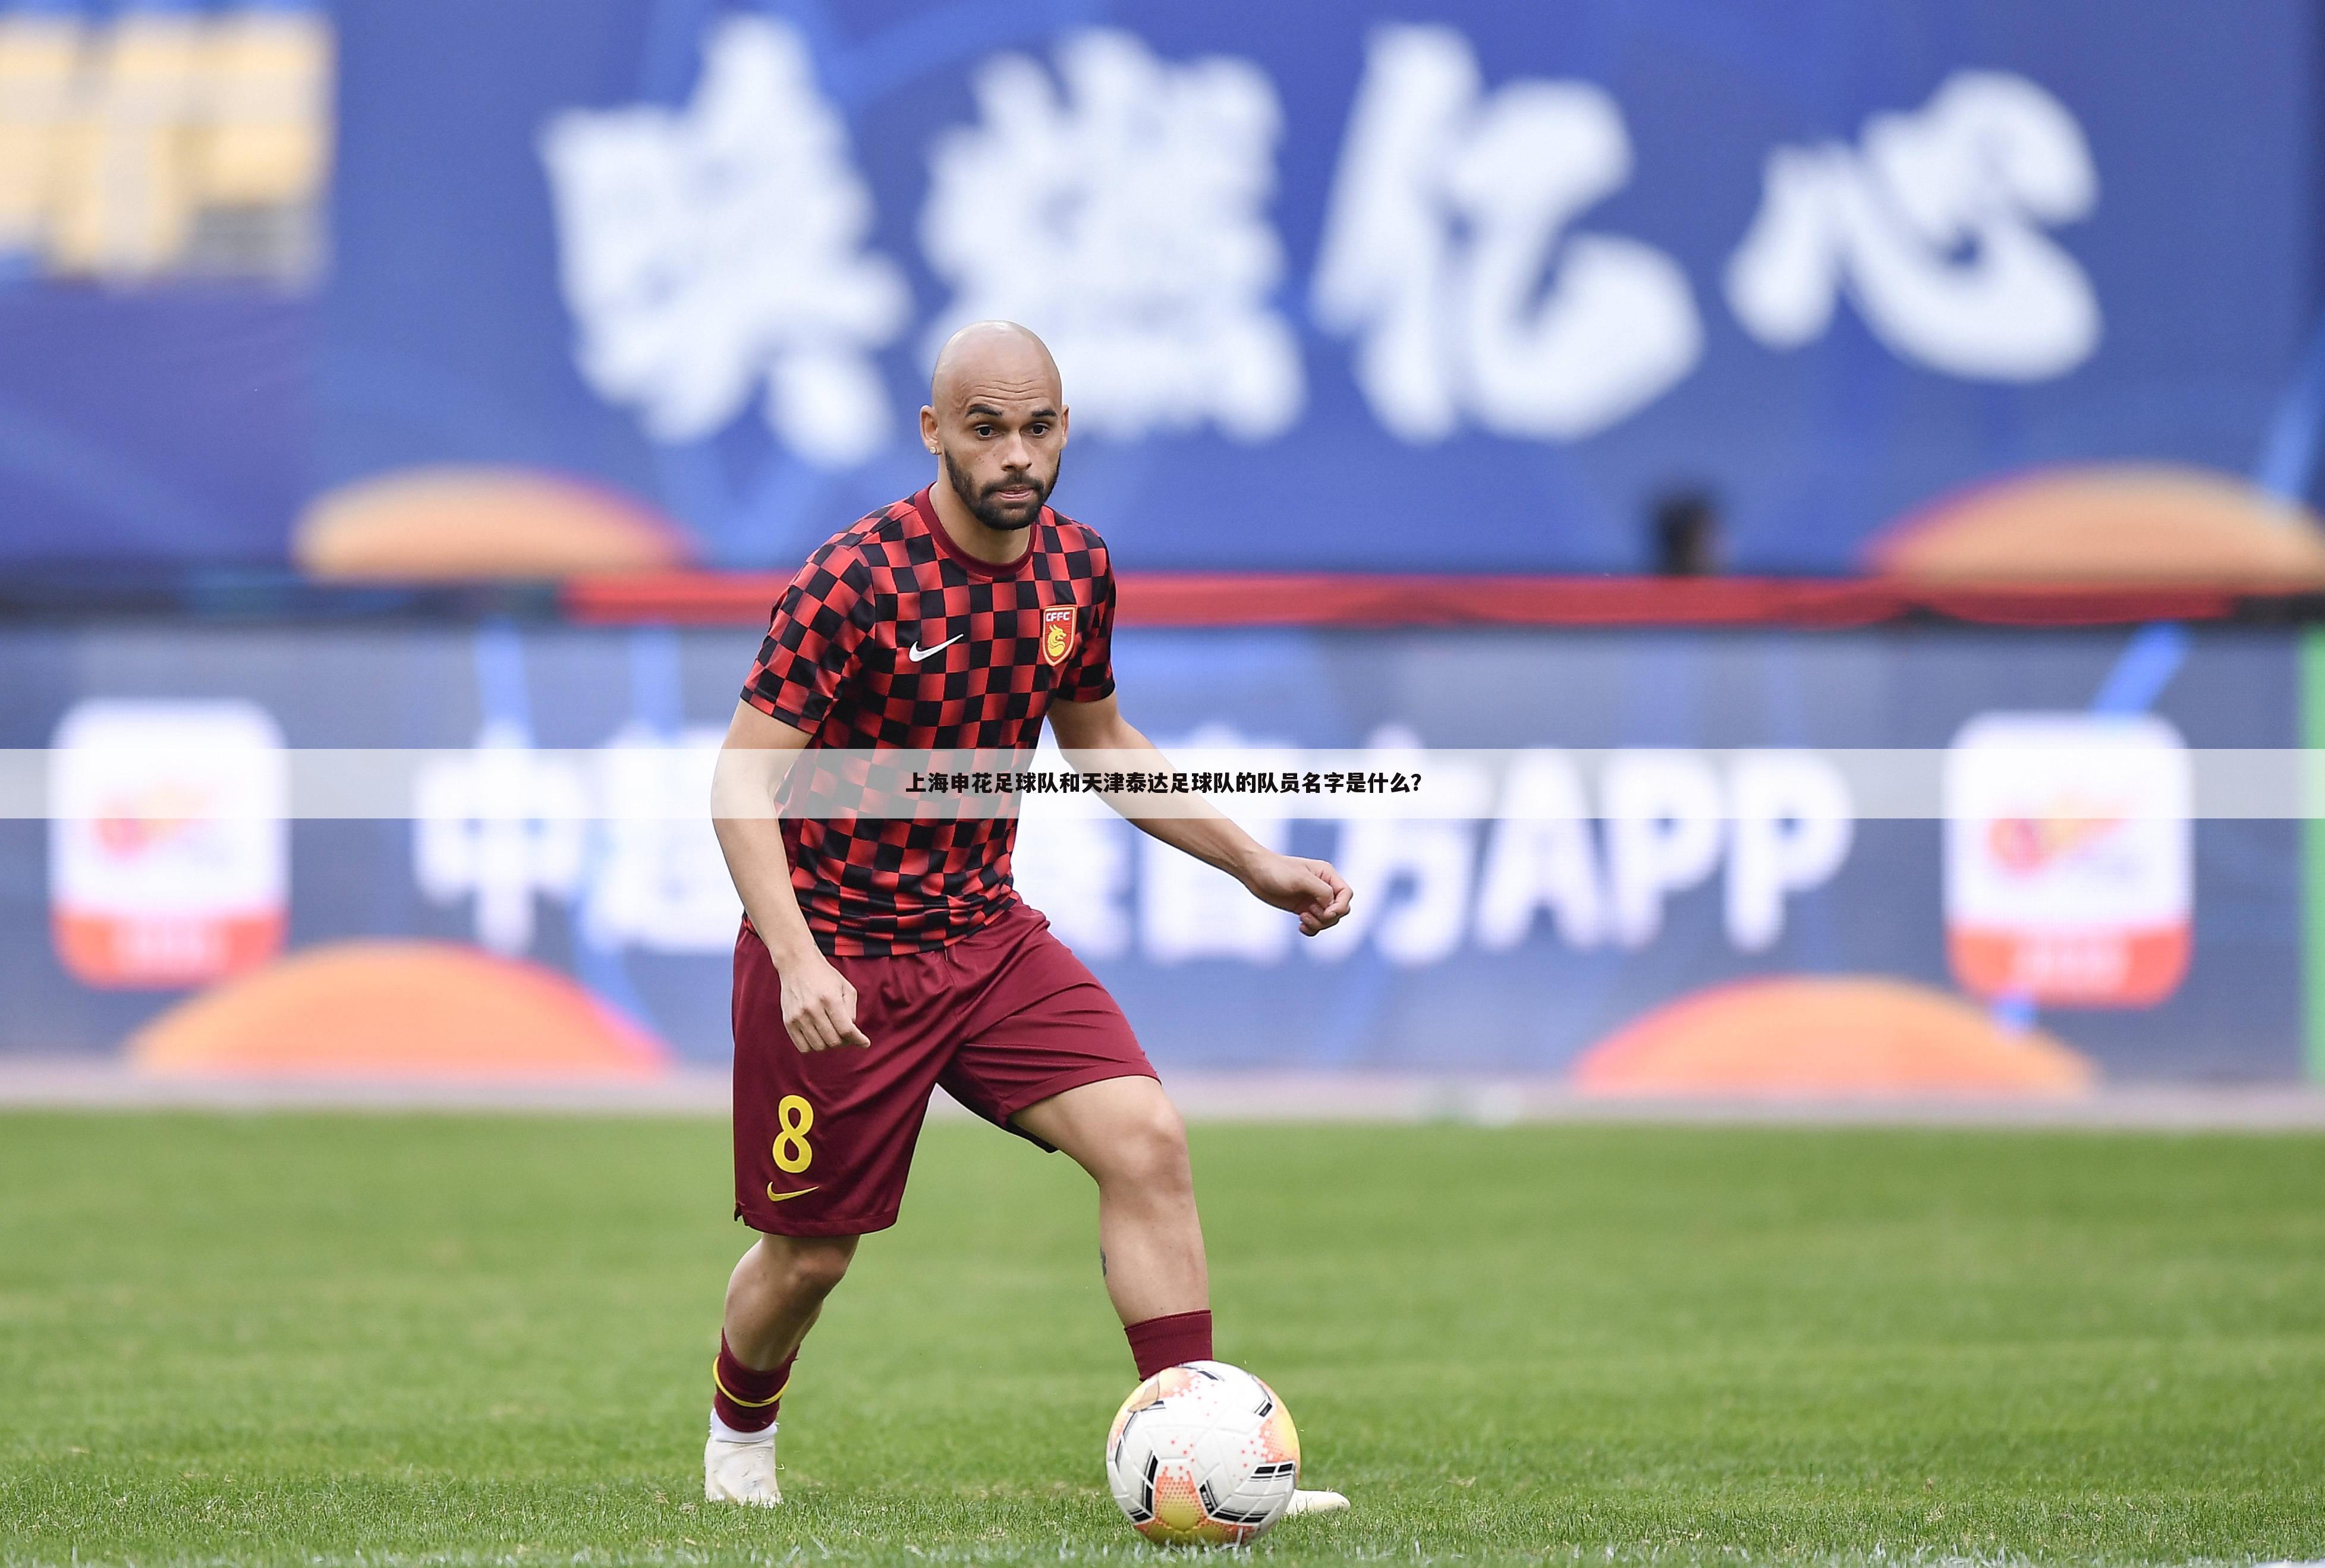 上海申花足球队和天津泰达足球队的队员名字是什么？